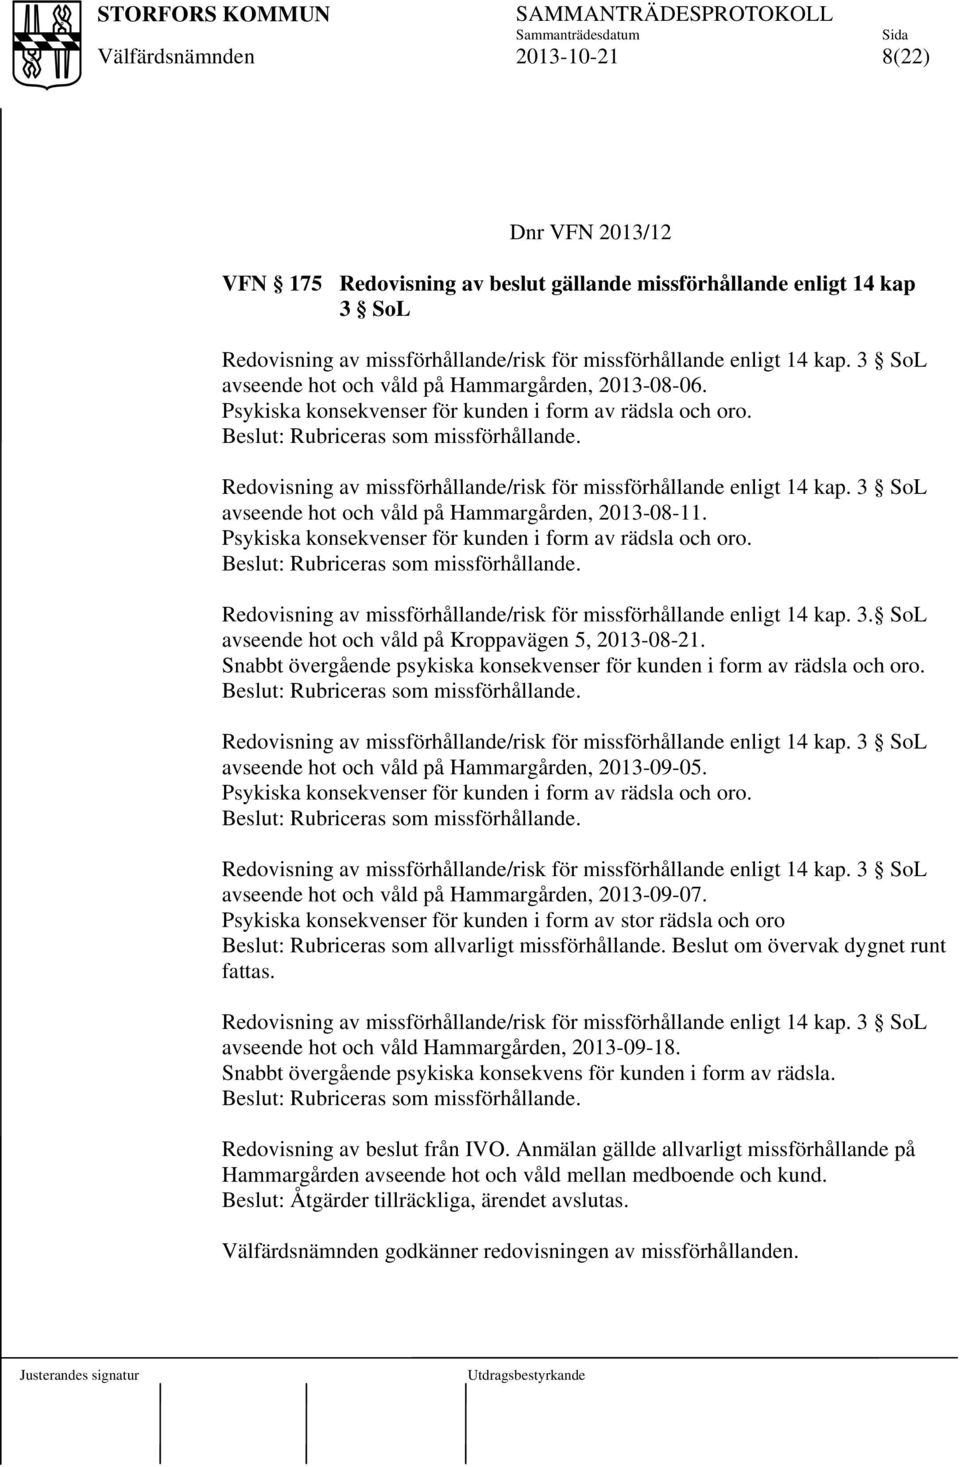 Redovisning av missförhållande/risk för missförhållande enligt 14 kap. 3 SoL avseende hot och våld på Hammargården, 2013-08-11. Psykiska konsekvenser för kunden i form av rädsla och oro.